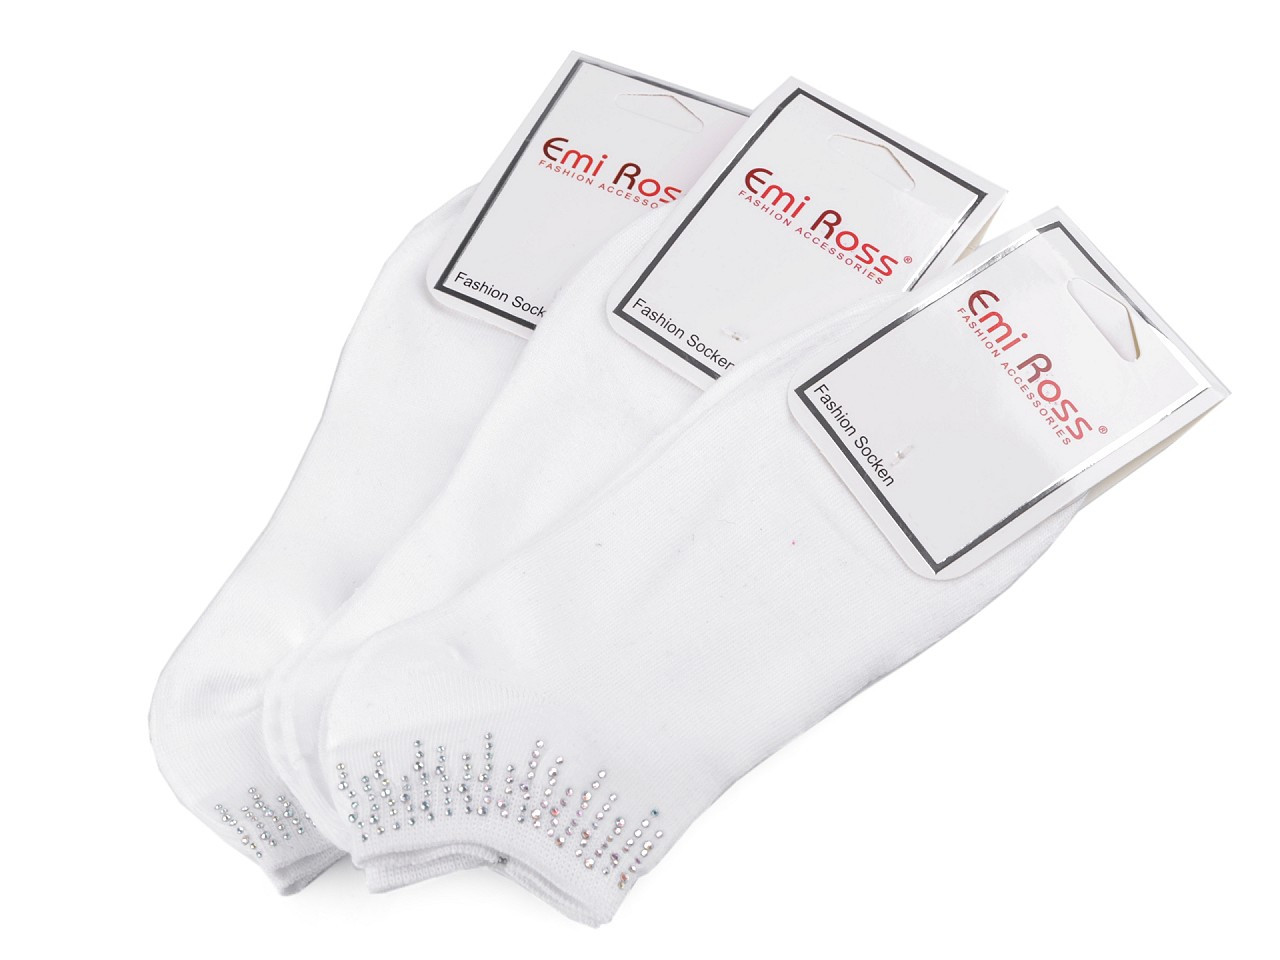 Dámské bavlněné ponožky kotníkové s kamínky Emi Ross, barva 23 (vel. 35-38) bílá